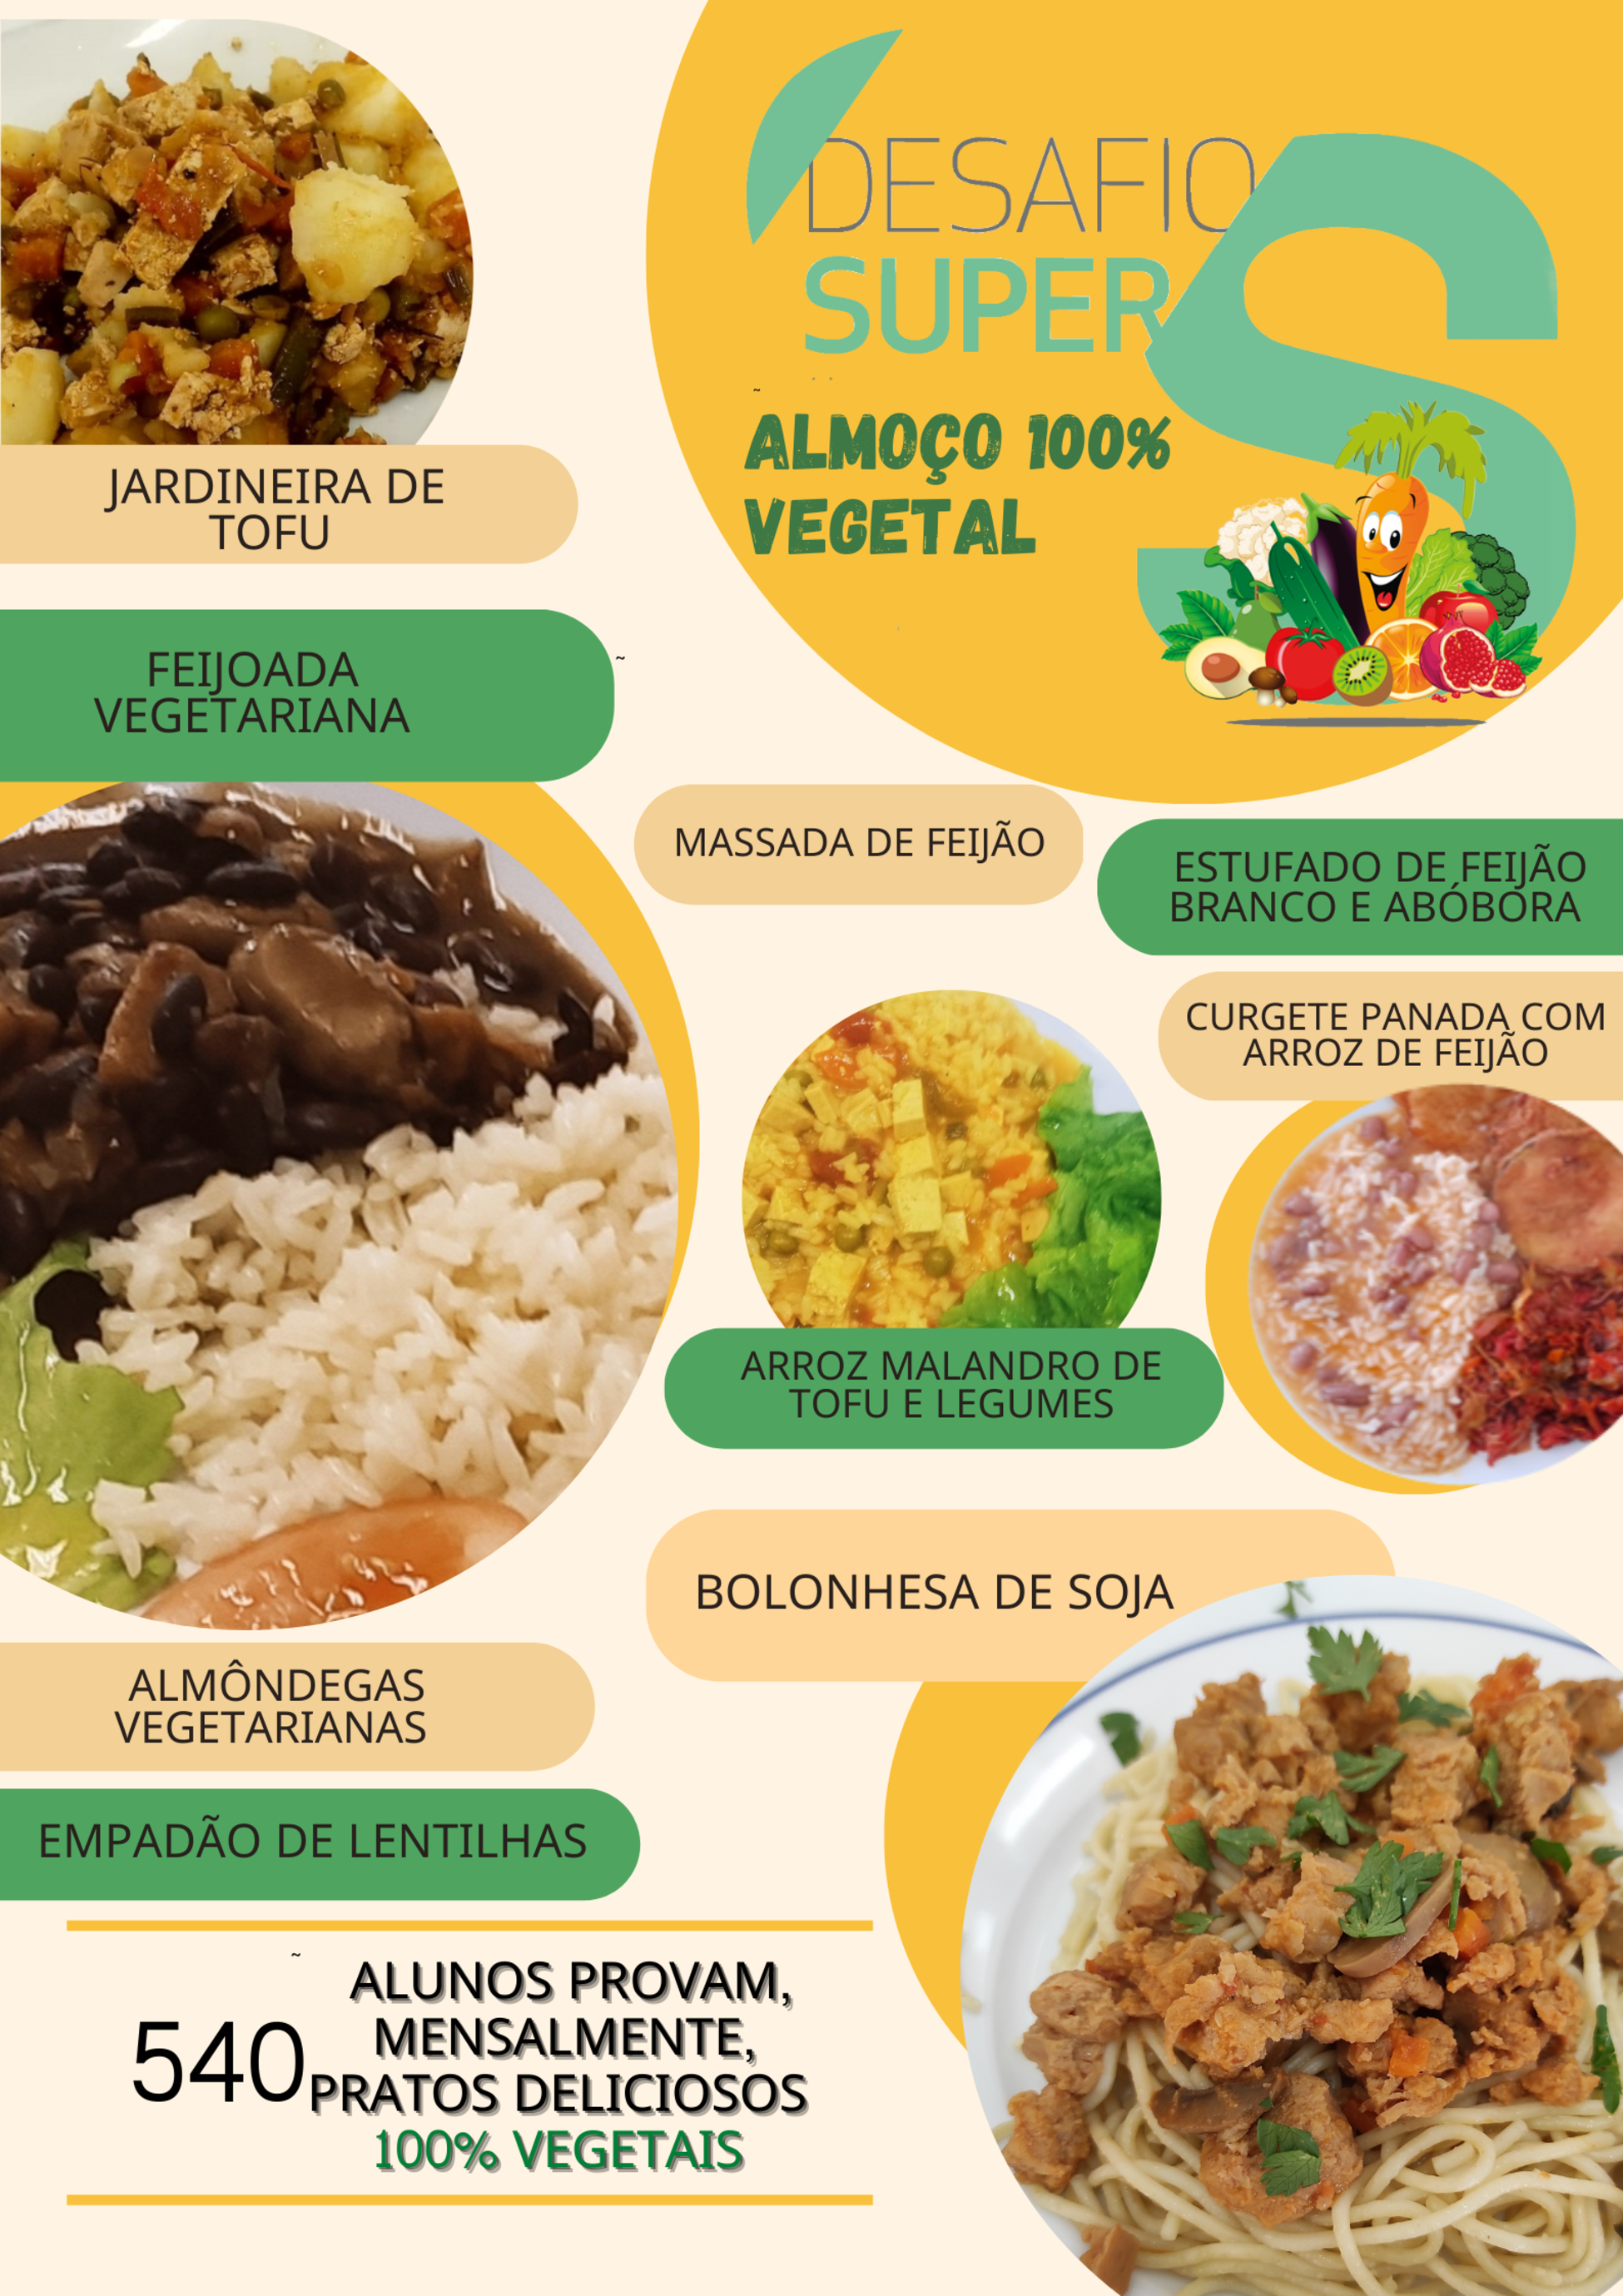 540 alunos de Viana do Castelo consomem mensalmente pratos 100% vegetais